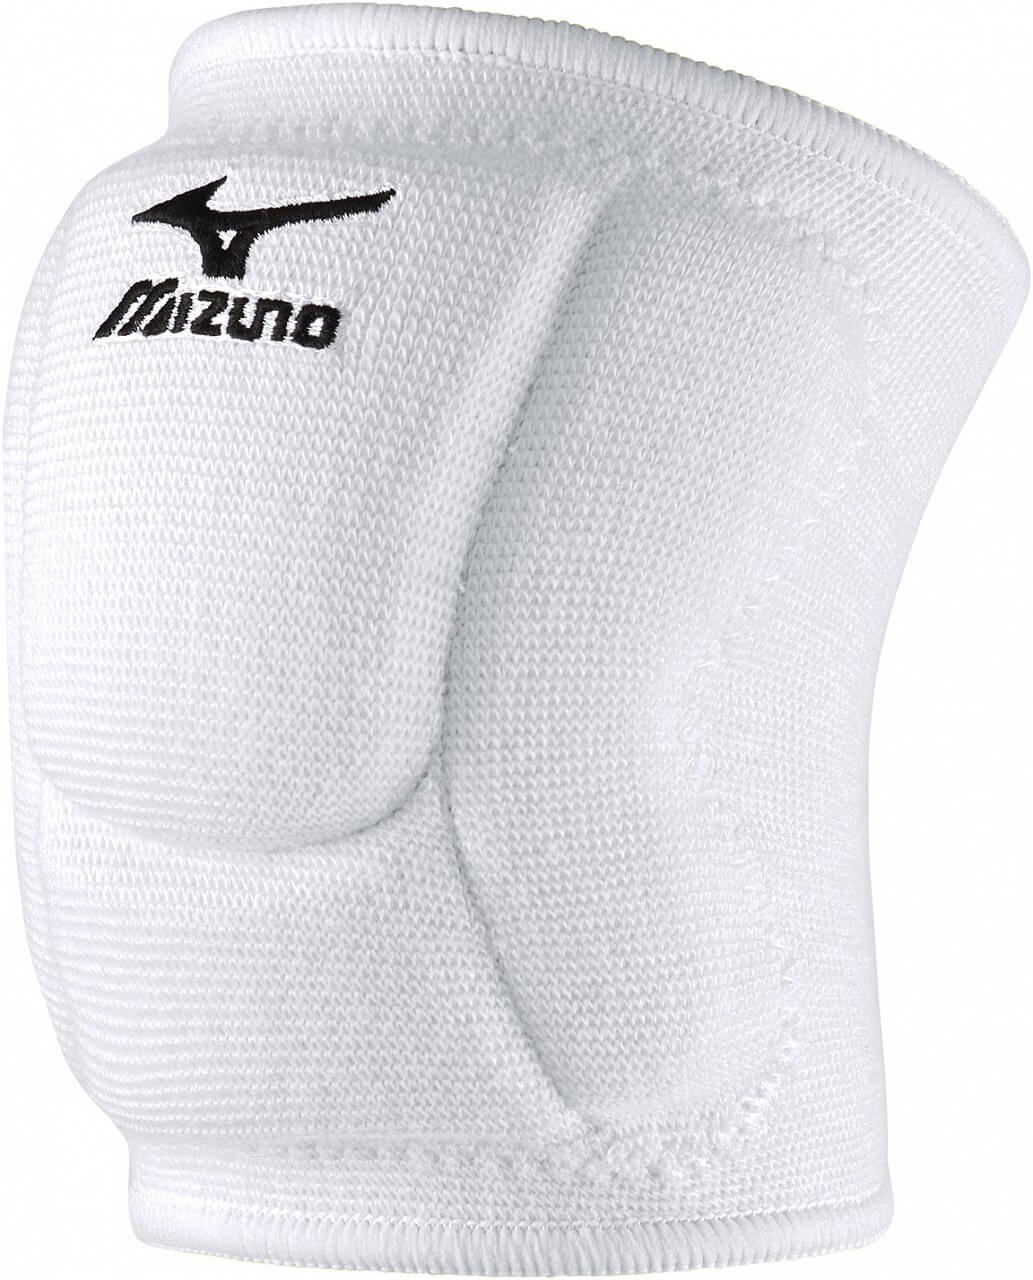 O pereche de rotule Mizuno VS1 Compact kneepad